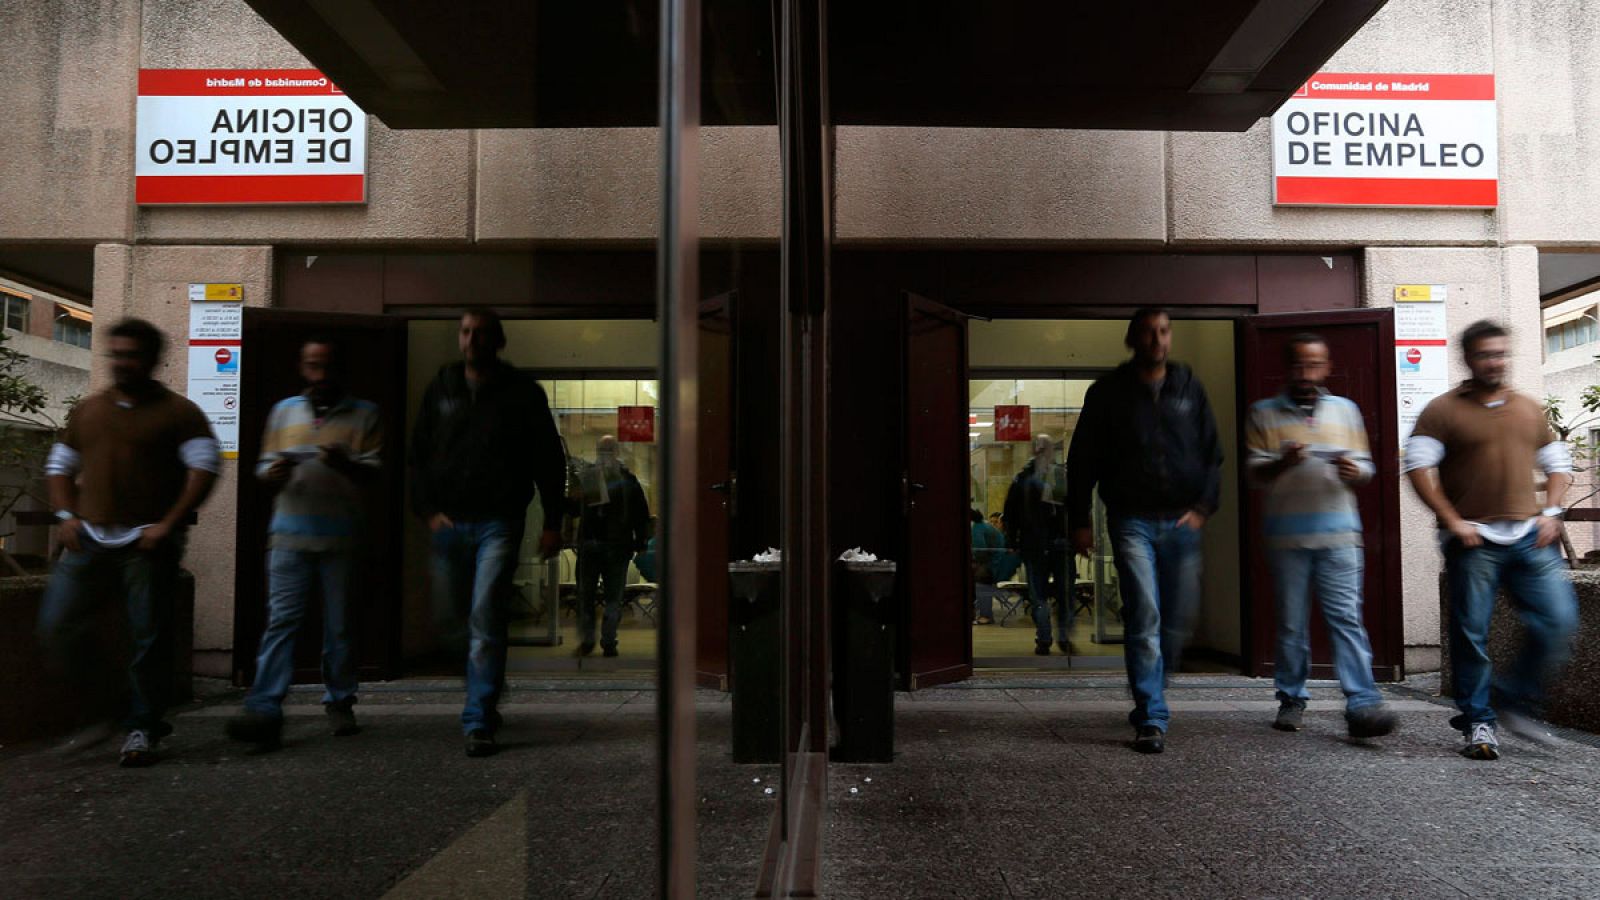 Varias personas salen de una oficina de empleo en Madrid en una imagen de archivo